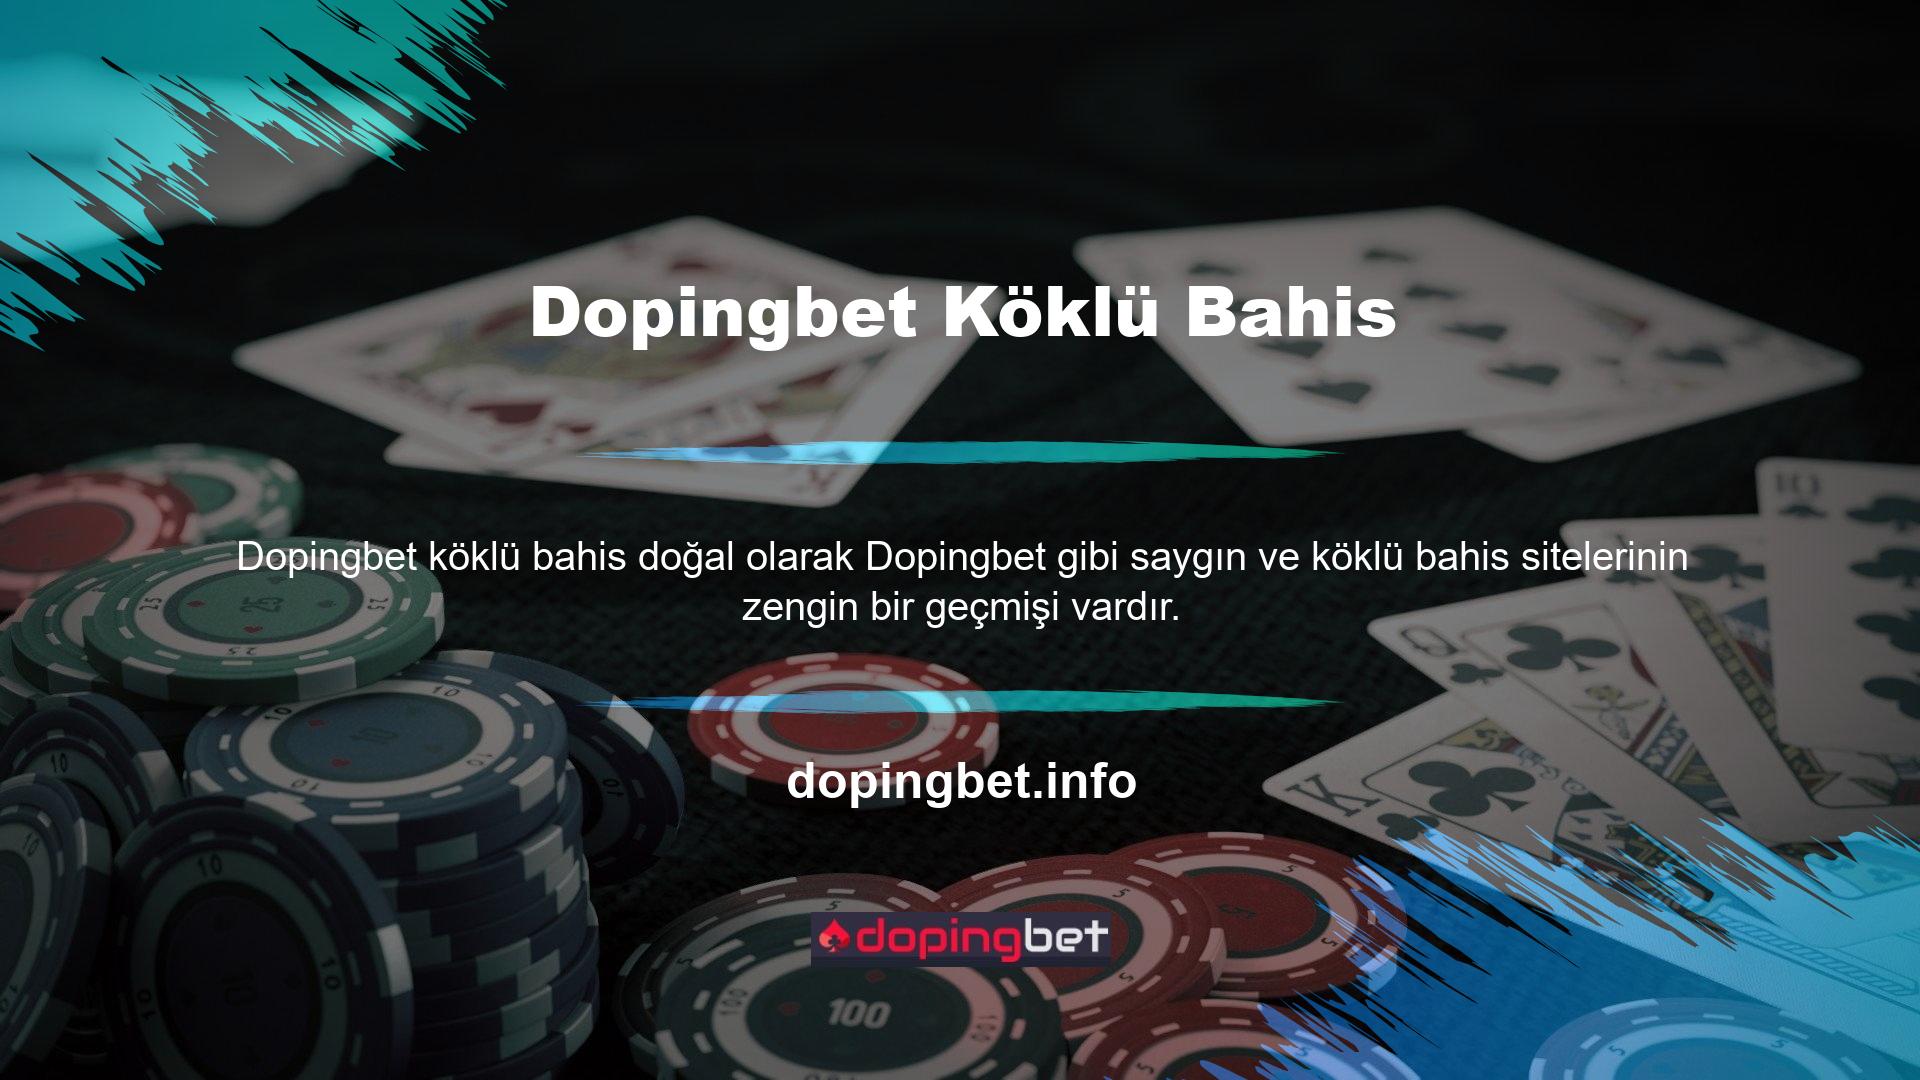 Ülkemizde yaşanan hukuki sorunlar nedeniyle Dopingbet Casino gibi casino sitelerinin sayfaları kapatılmıştır